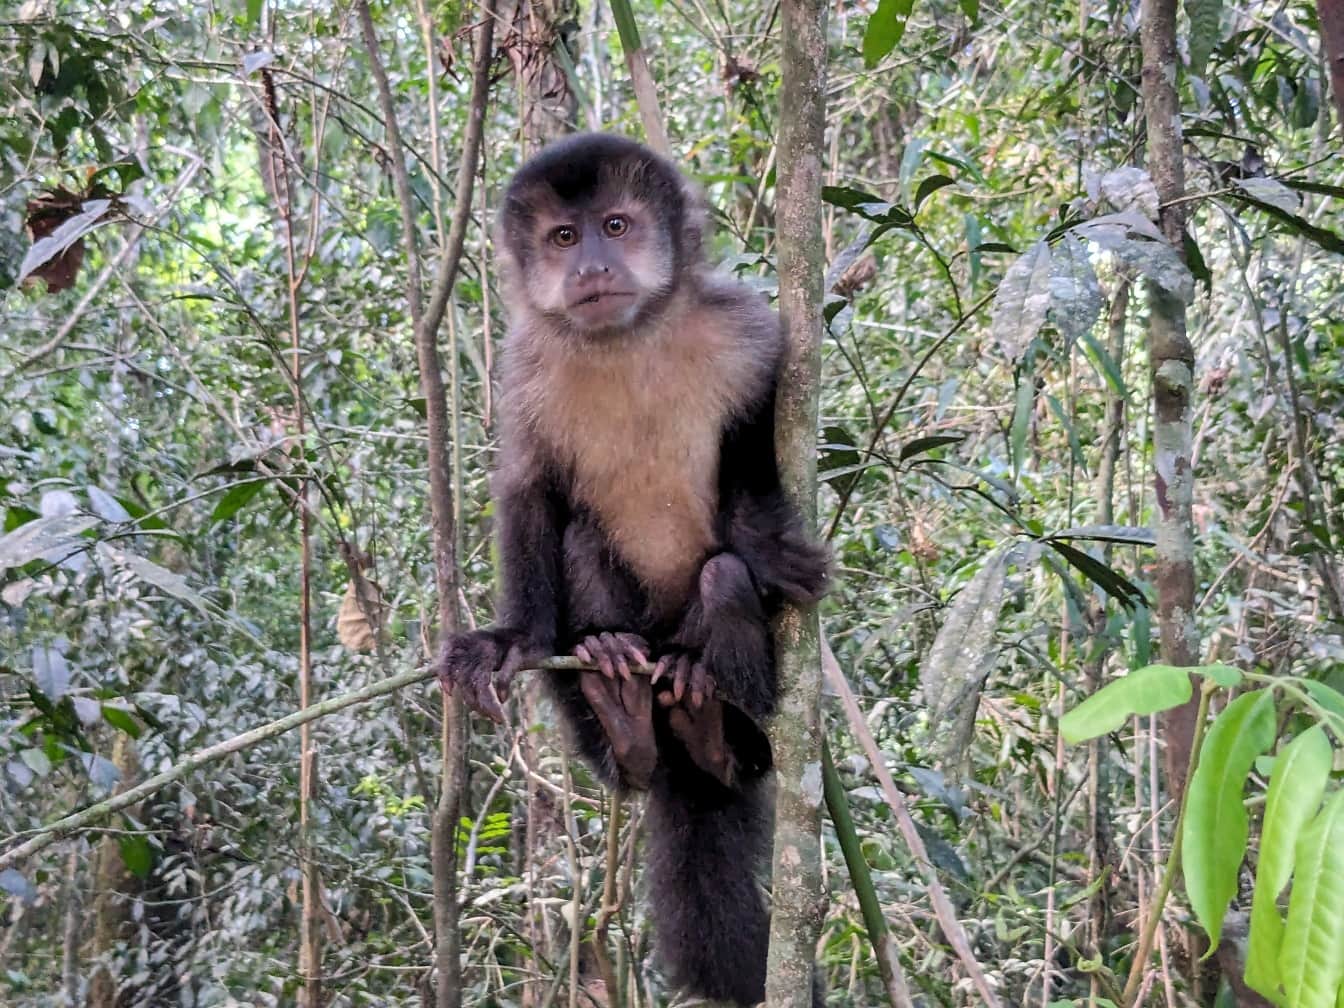 Crni kapucinski majmun (Sapajus nigritus) u prašumi u nacionalnom parku Iguazu